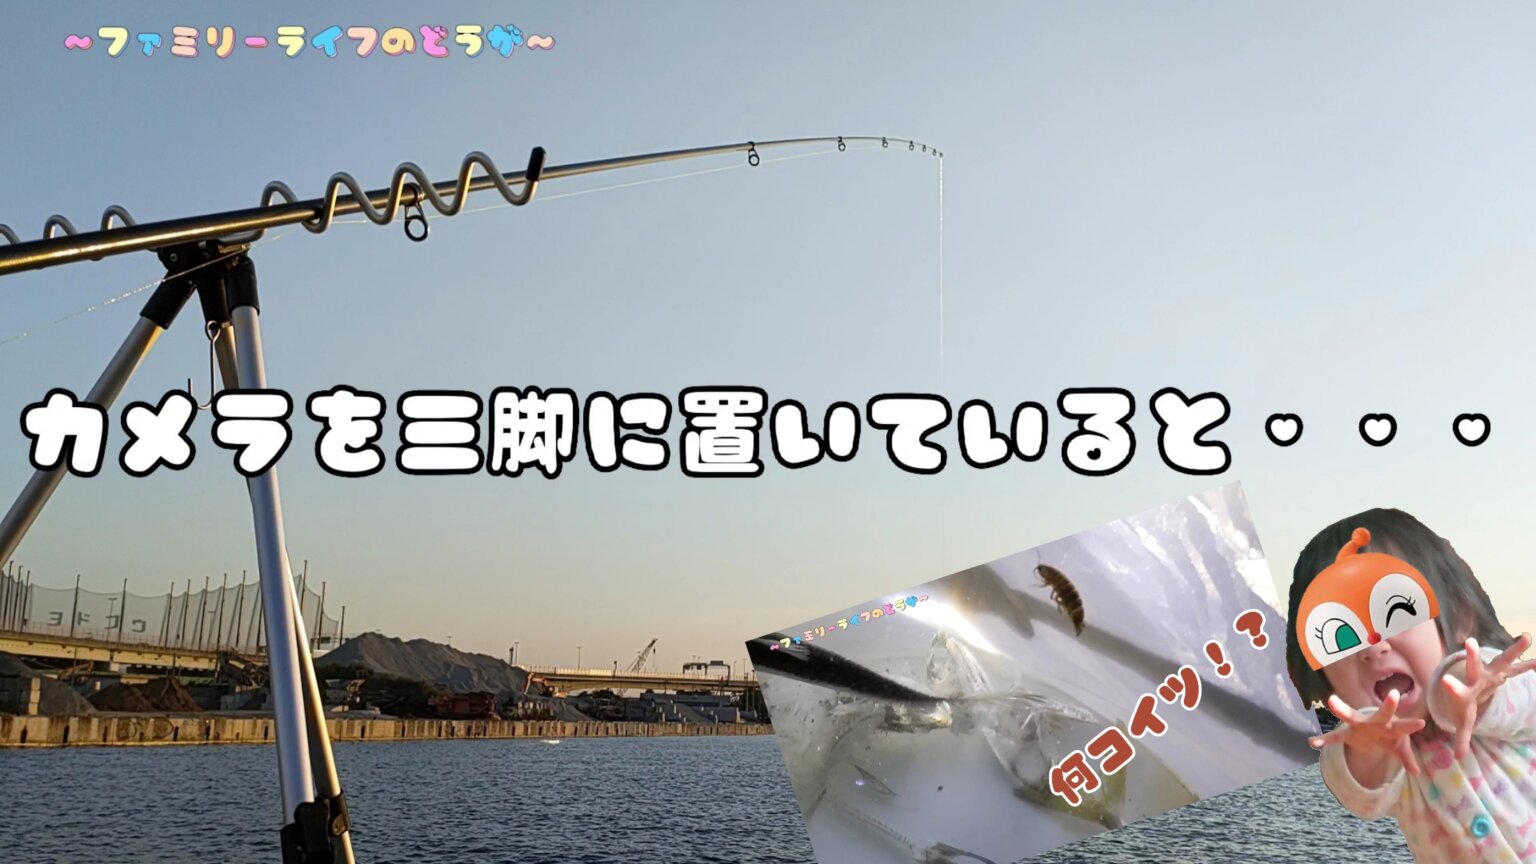 【釣り】汐見埠頭でファミリーフィッシング♪謎の寄生虫に遭遇・・・【大阪】